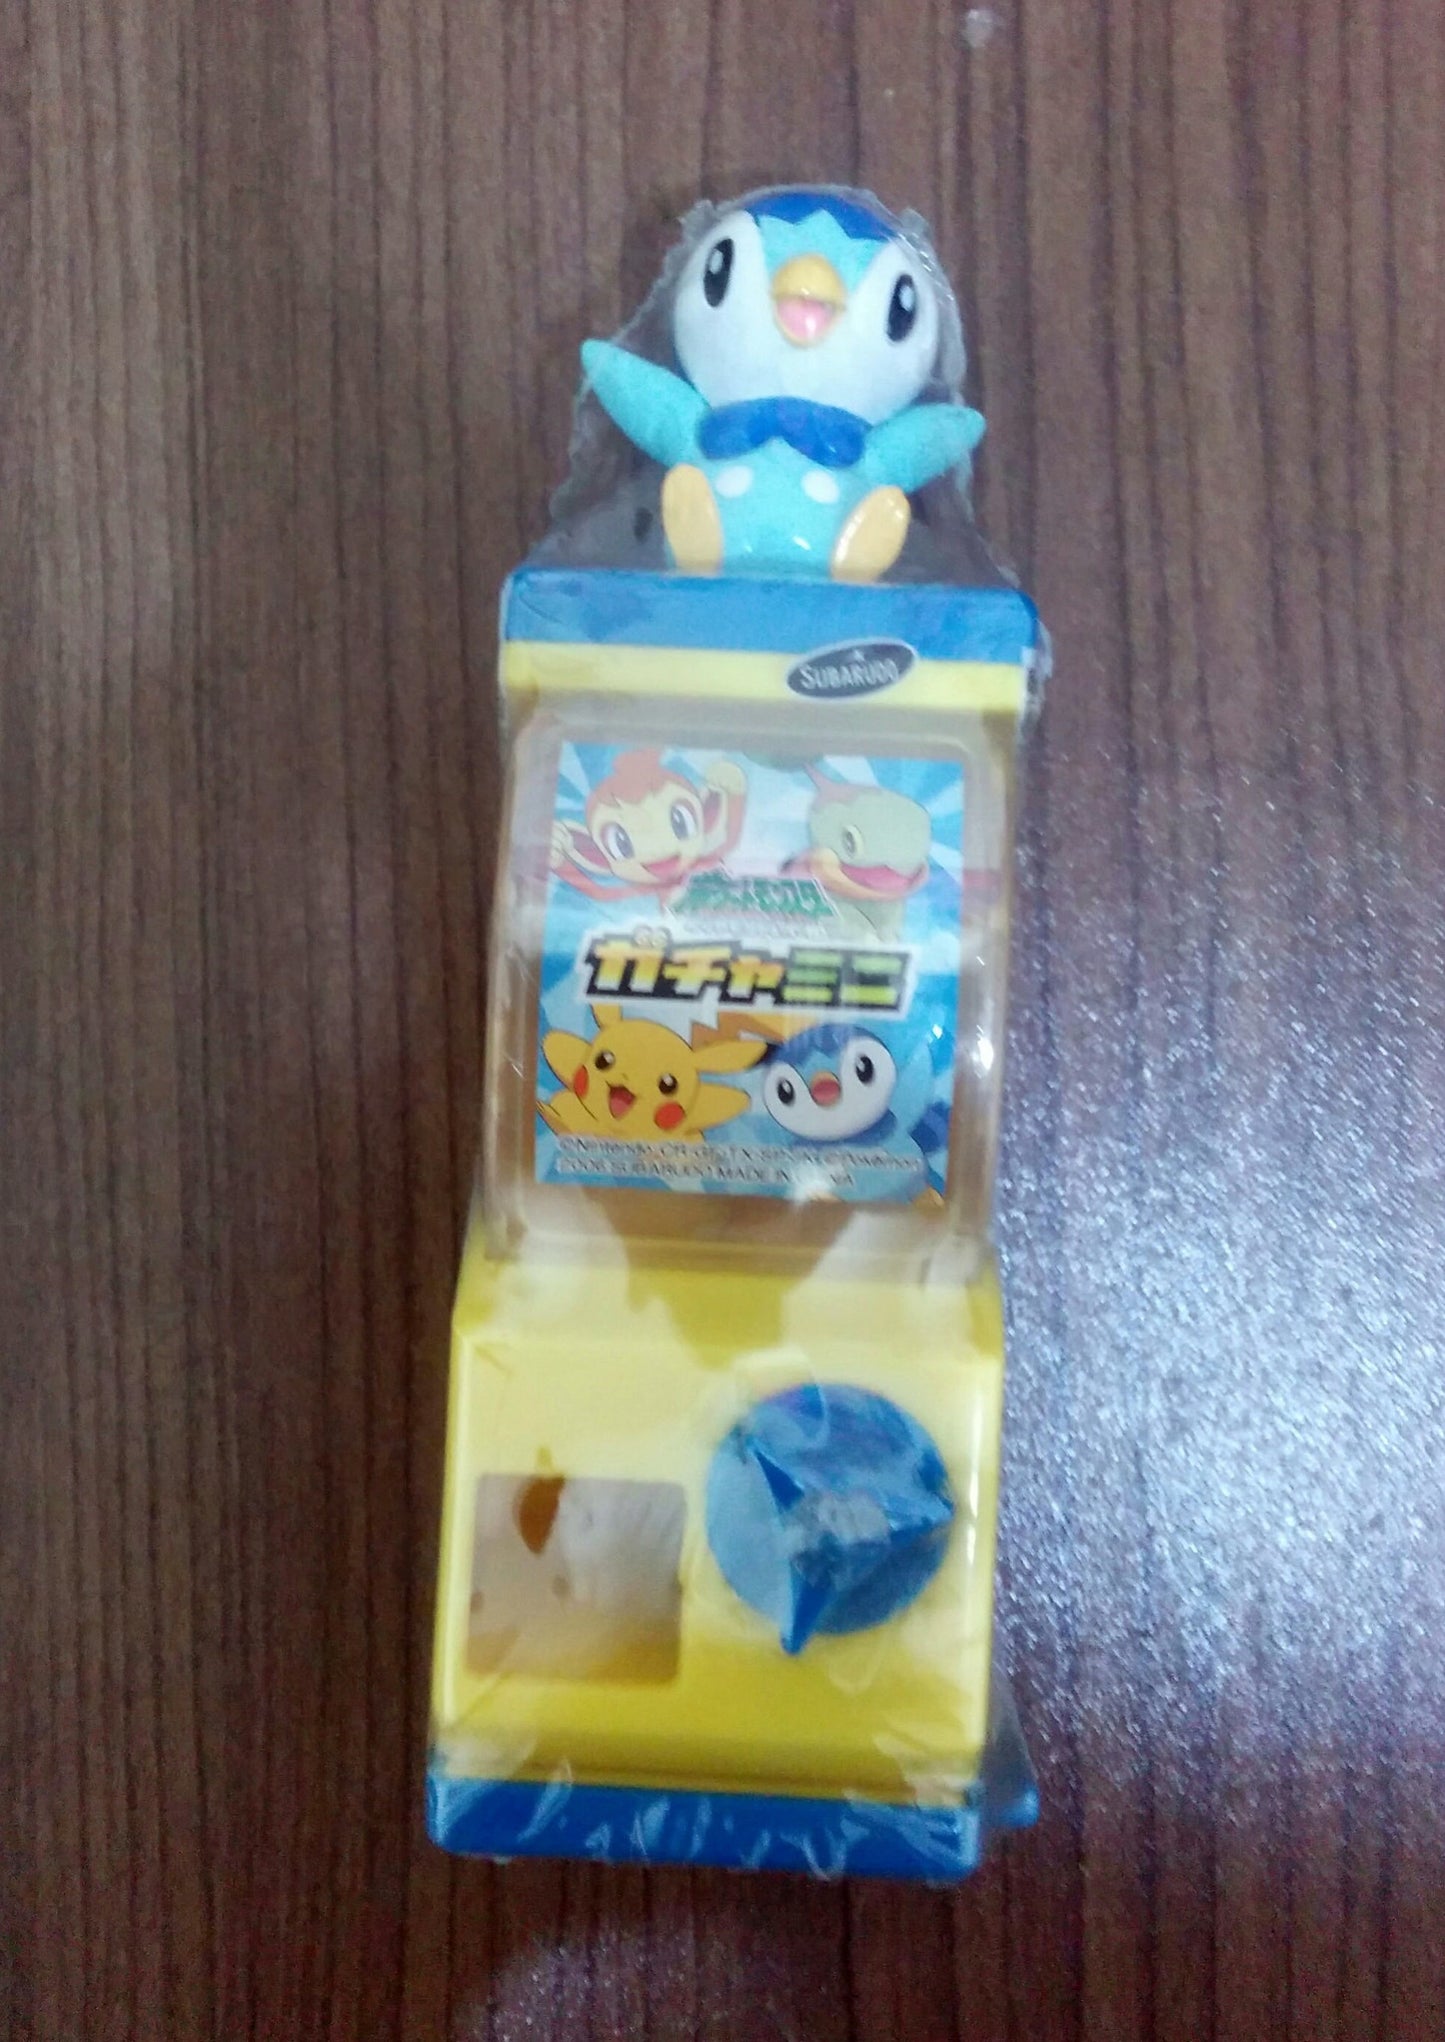 Subarudo Pokemon Pocket Monsters Piplup 4" Mini Vending Machine Figure - Lavits Figure
